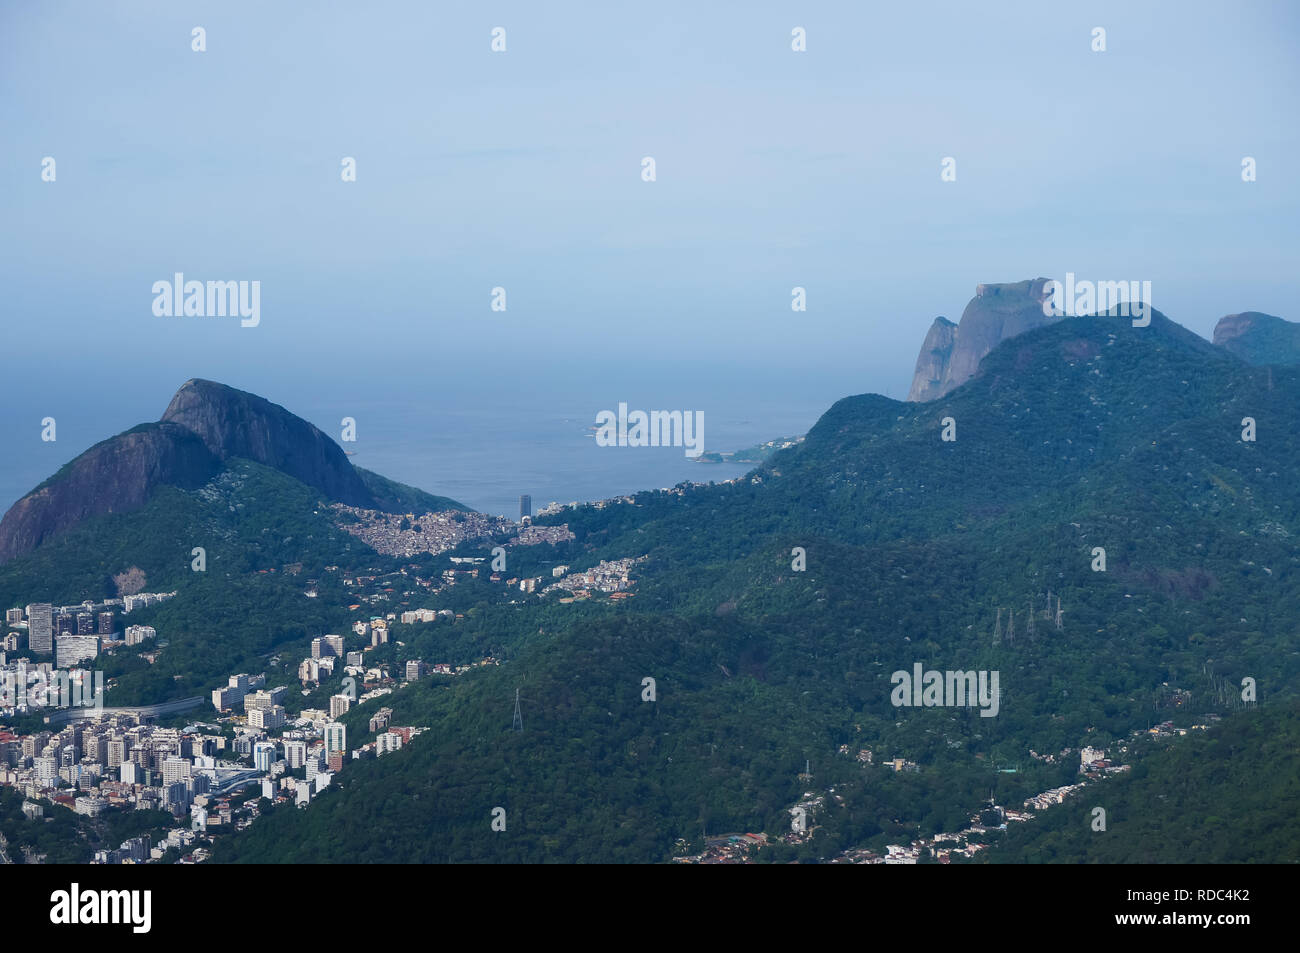 Landscape of Morro Dois Irmaos, Rocinha, Pedra Bonita and Pedra da Gavea, Rio de Janeiro, Brazil Stock Photo